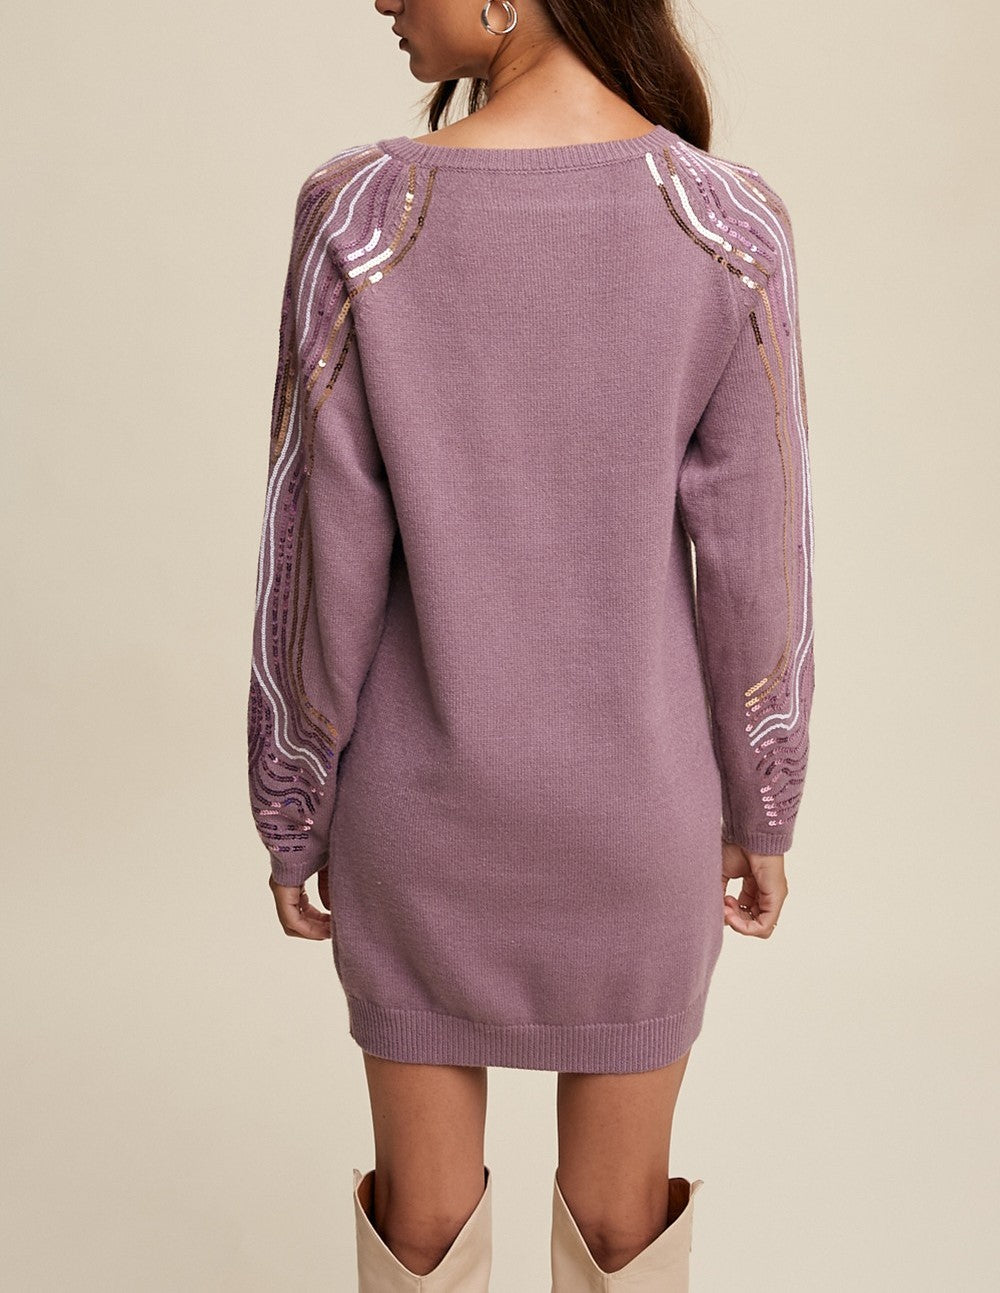 Lavender Sparkle - Sequin Tunic Dress